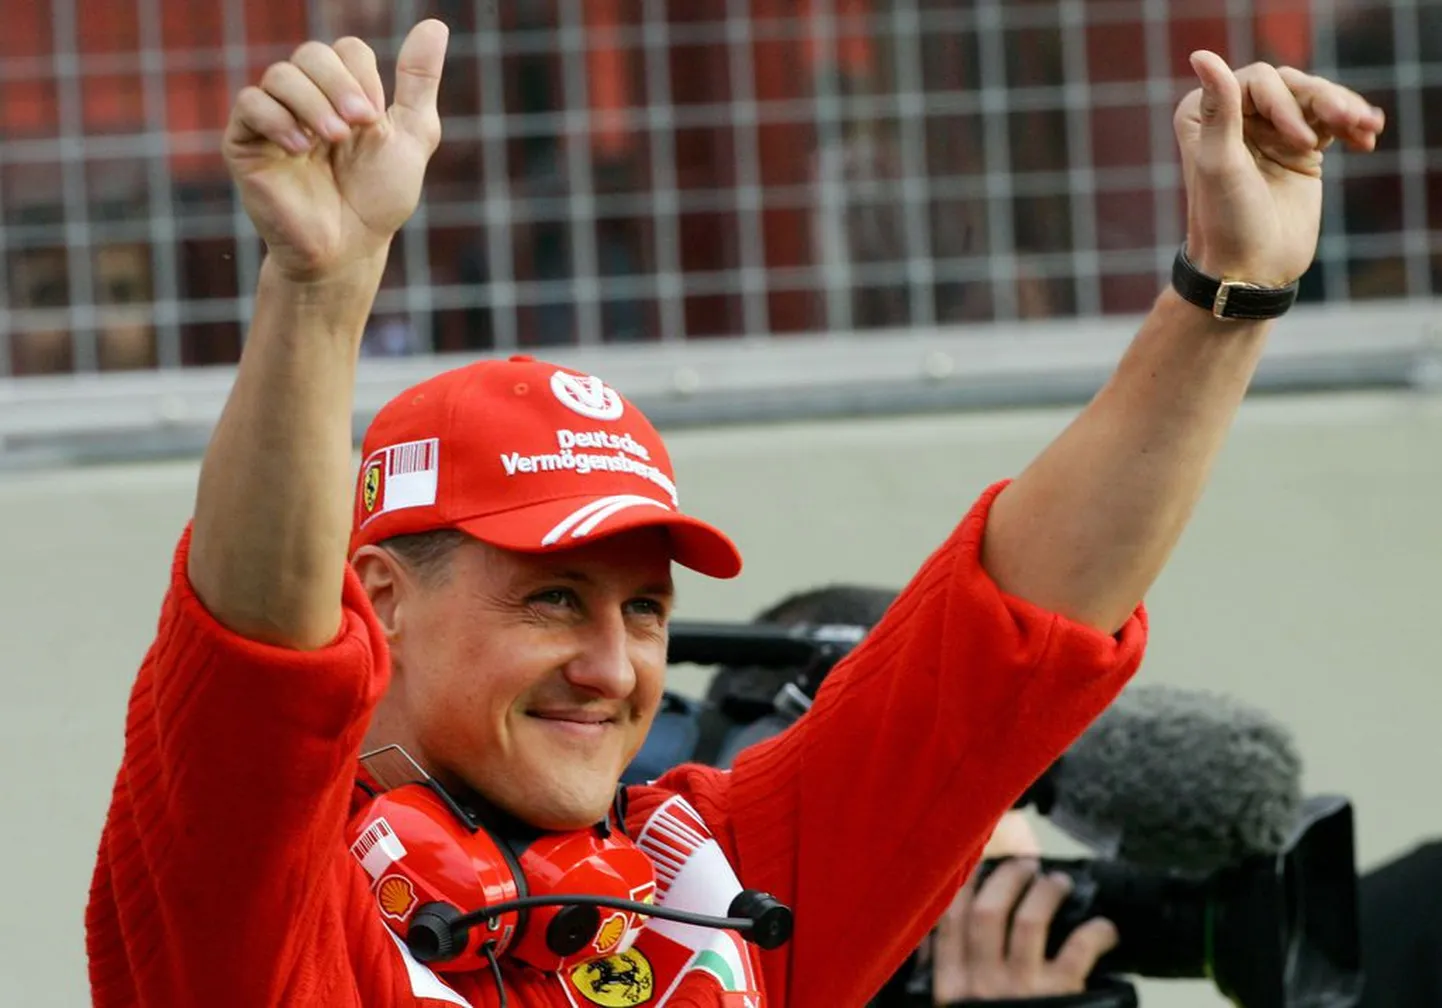 Vormelilegend Michael Schumacher.